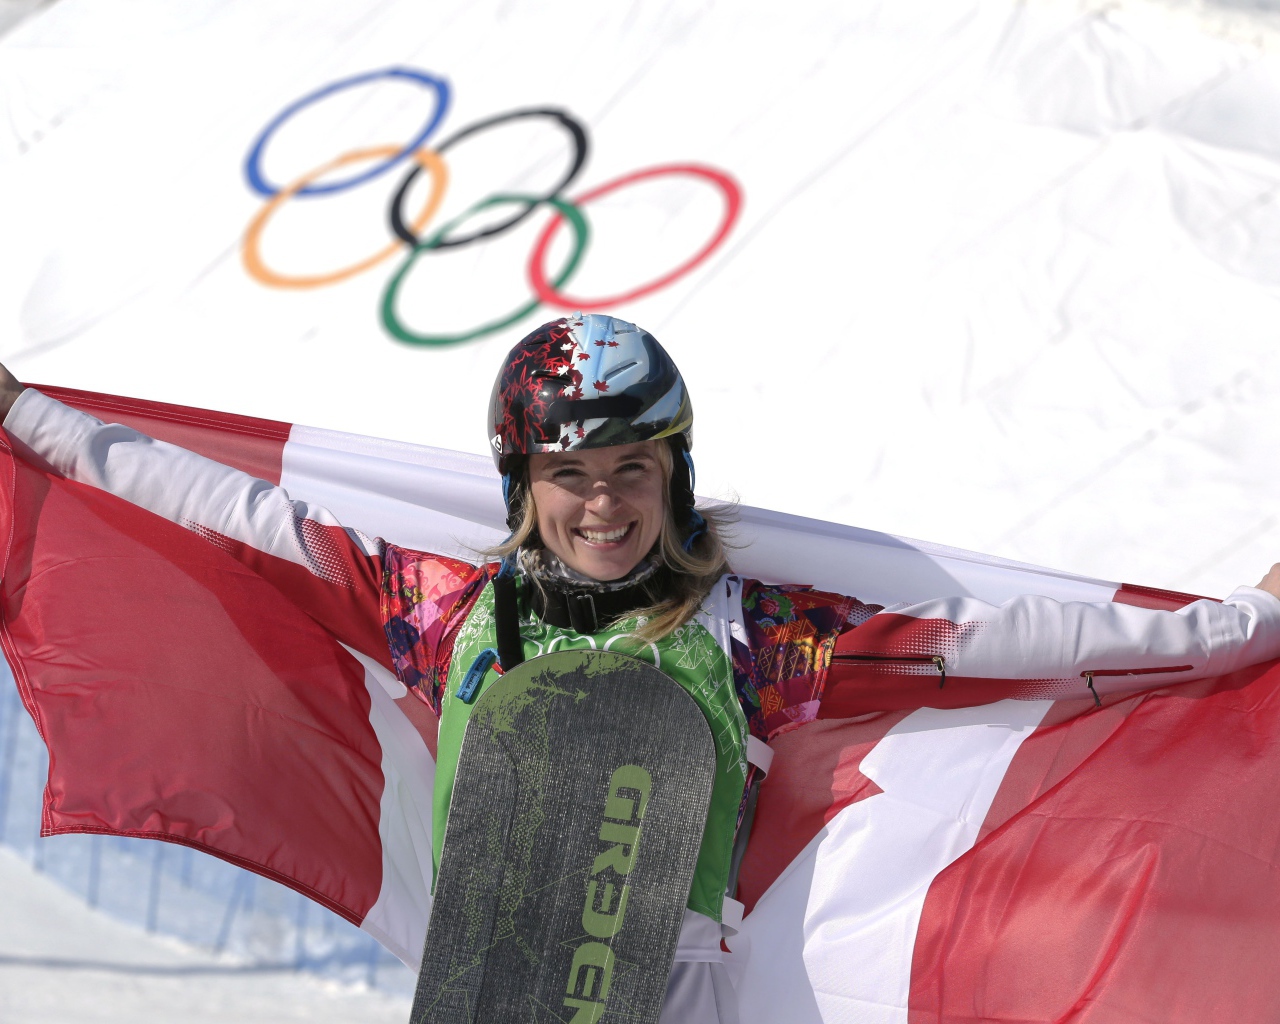 Доминик Мальте канадская сноубордистка серебряная медаль на олимпиаде в Сочи 2014 год